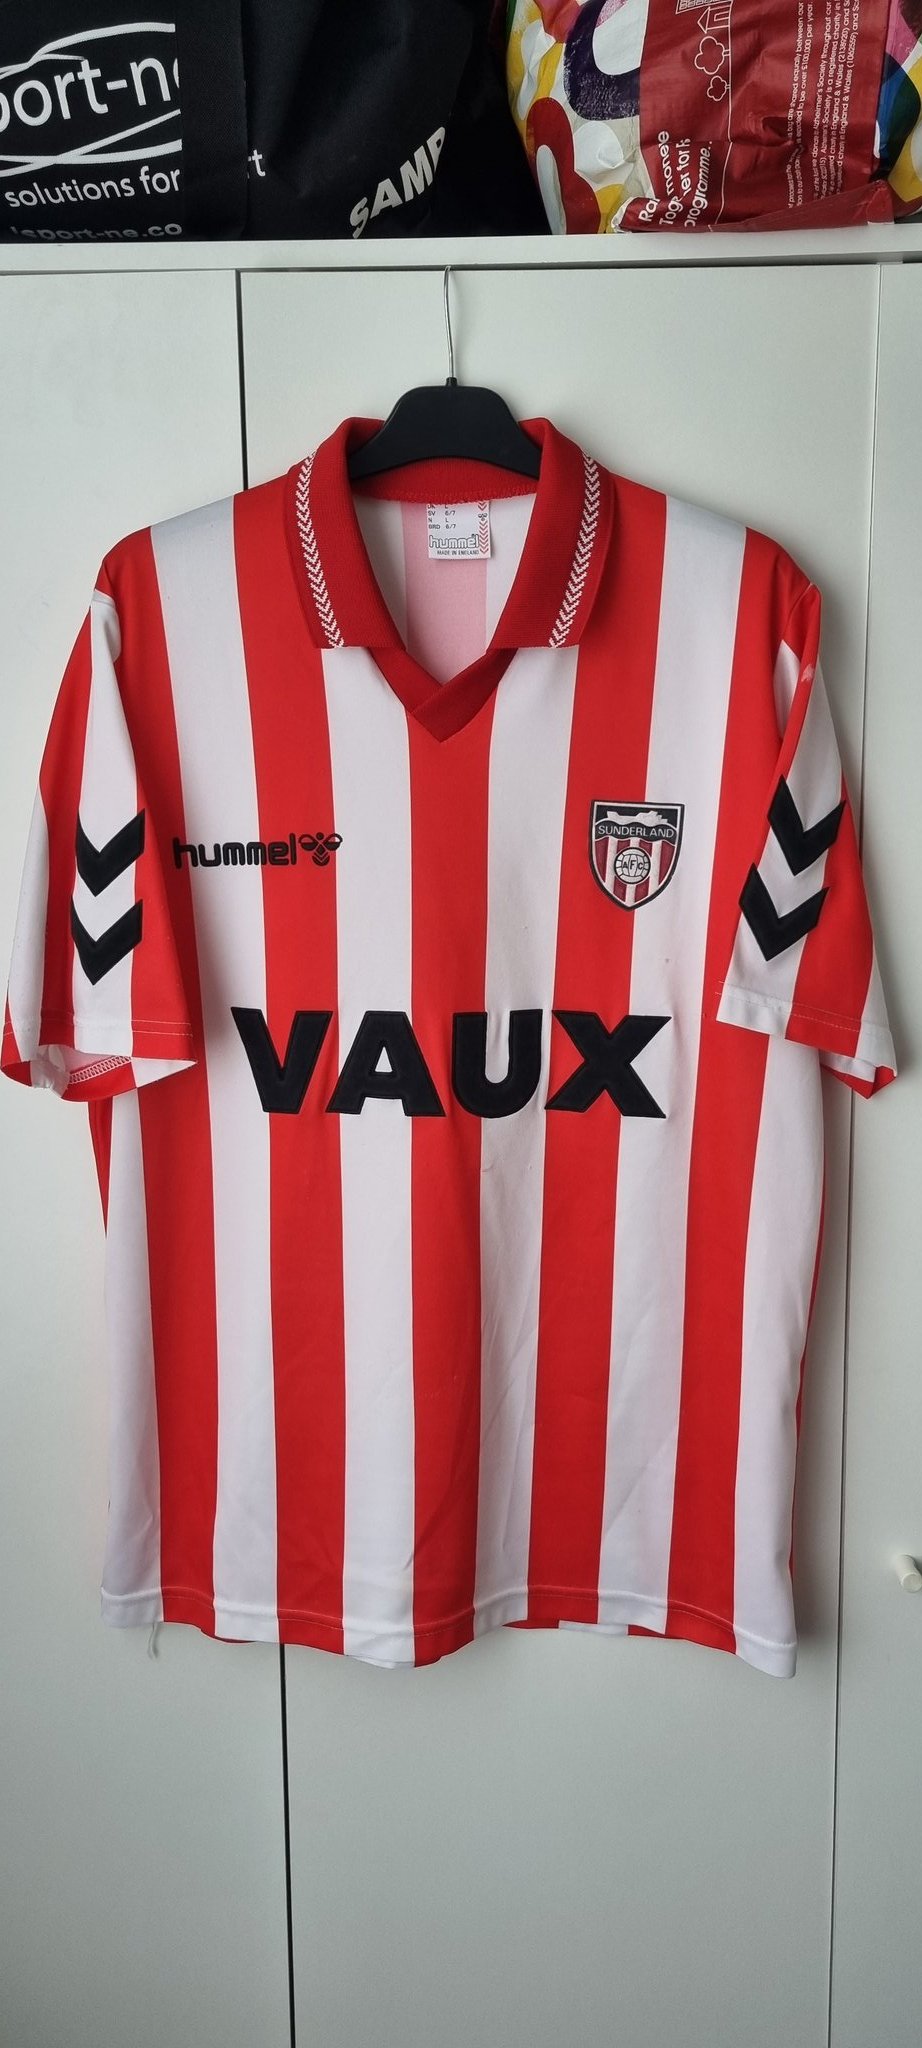 Sunderland 1991-92 Home Kit